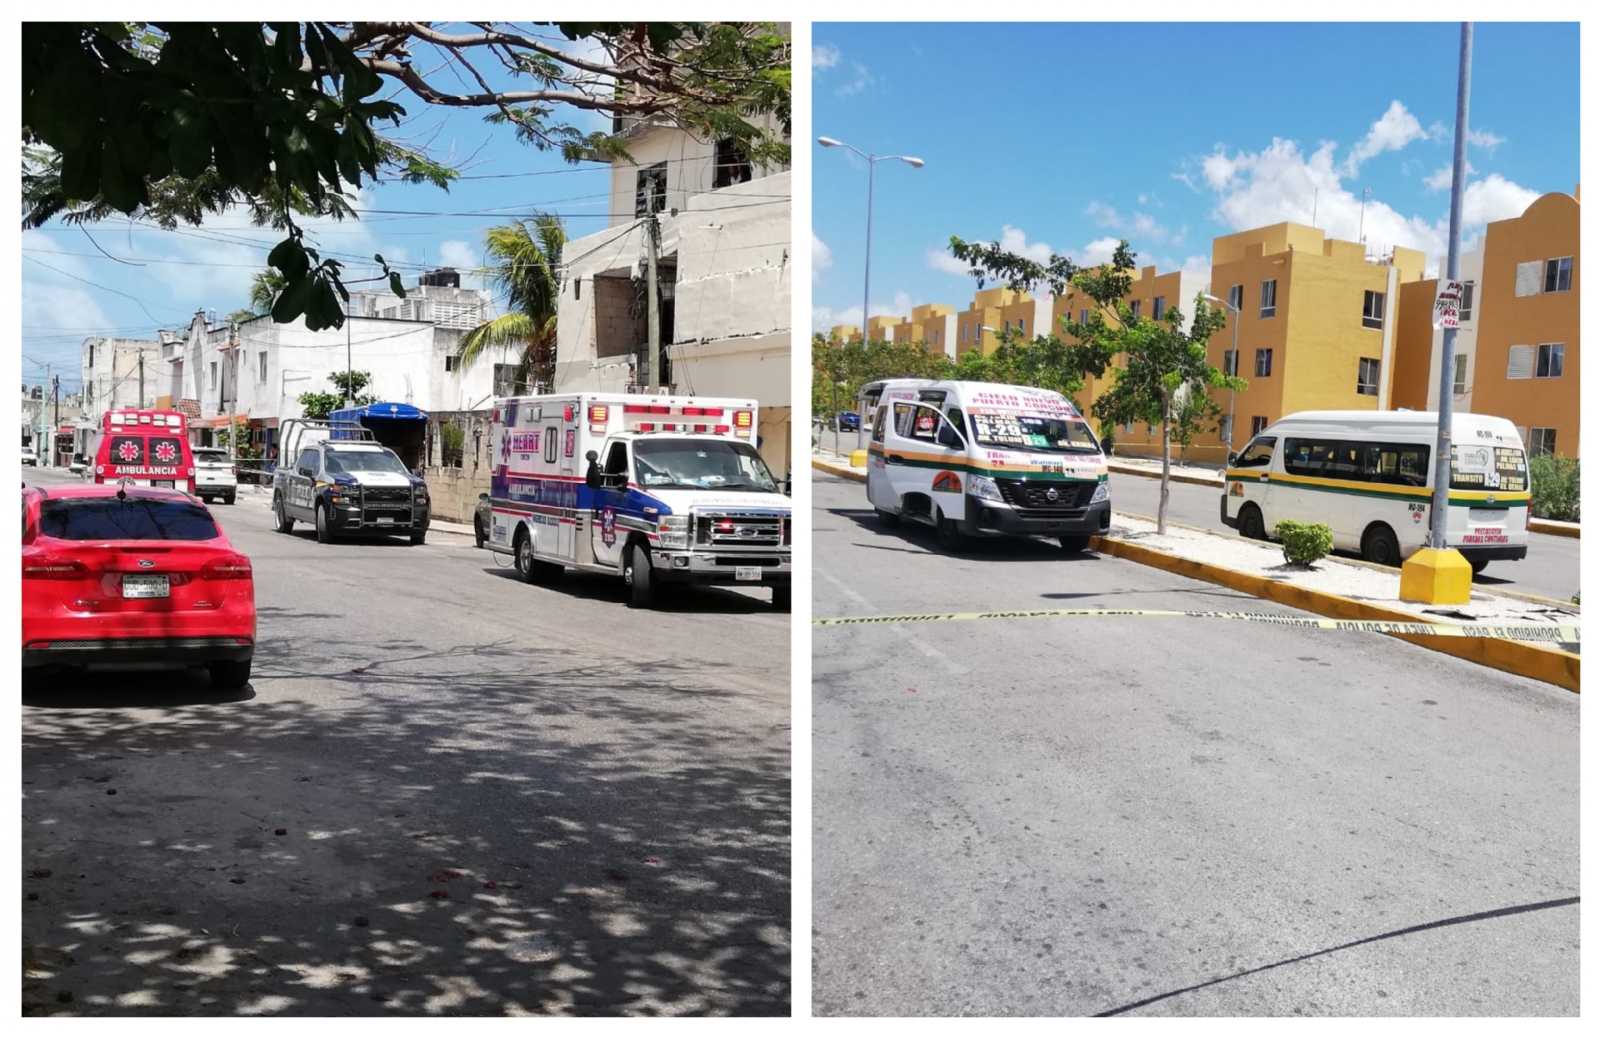 La inseguridad en Cancún sigue avanzando y los actos de violencia son cada vez más frecuentes